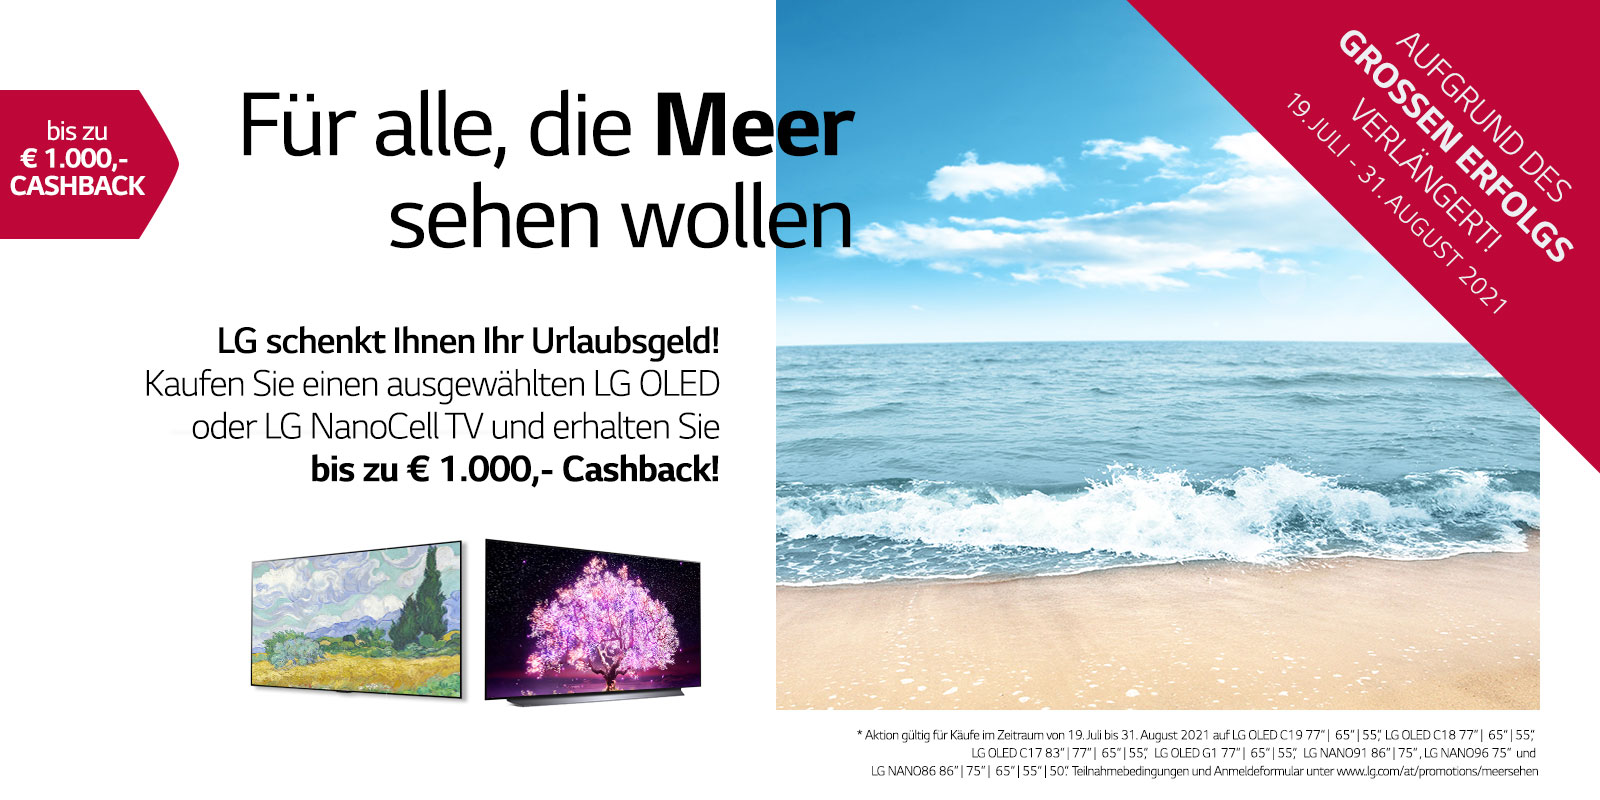 LG schenkt Ihnen Ihr Urlaubsgeld. Jetzt bis zu € 1.000 Cashback sichern!